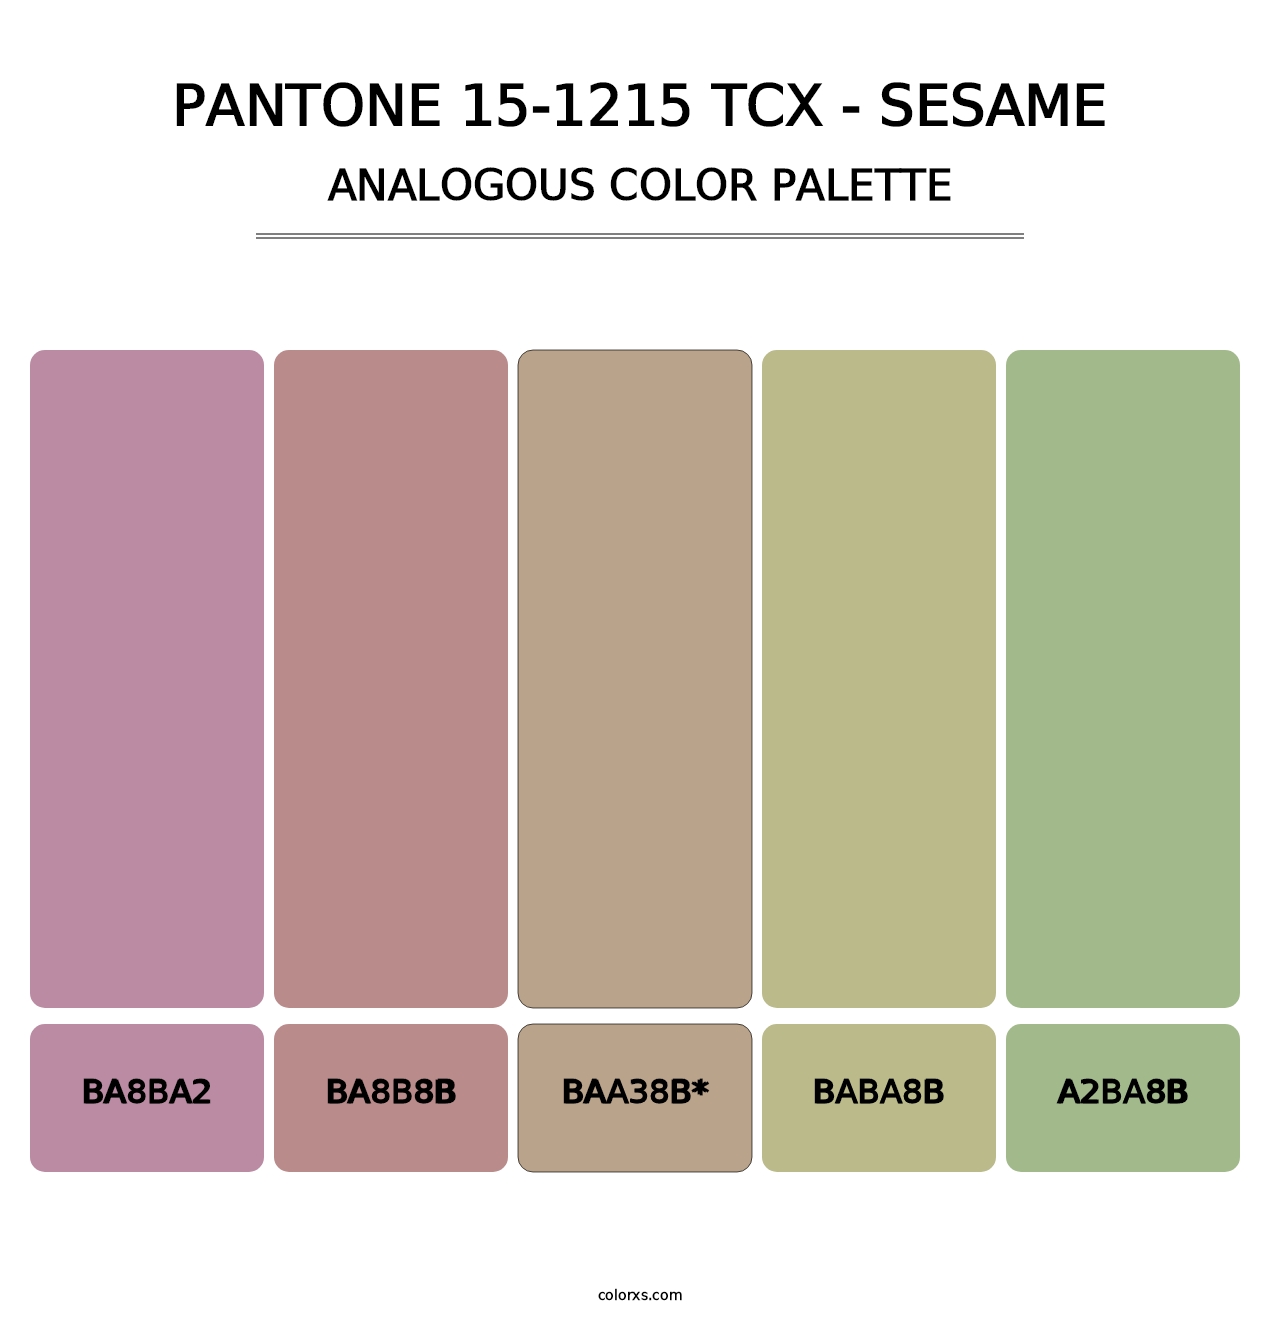 PANTONE 15-1215 TCX - Sesame - Analogous Color Palette